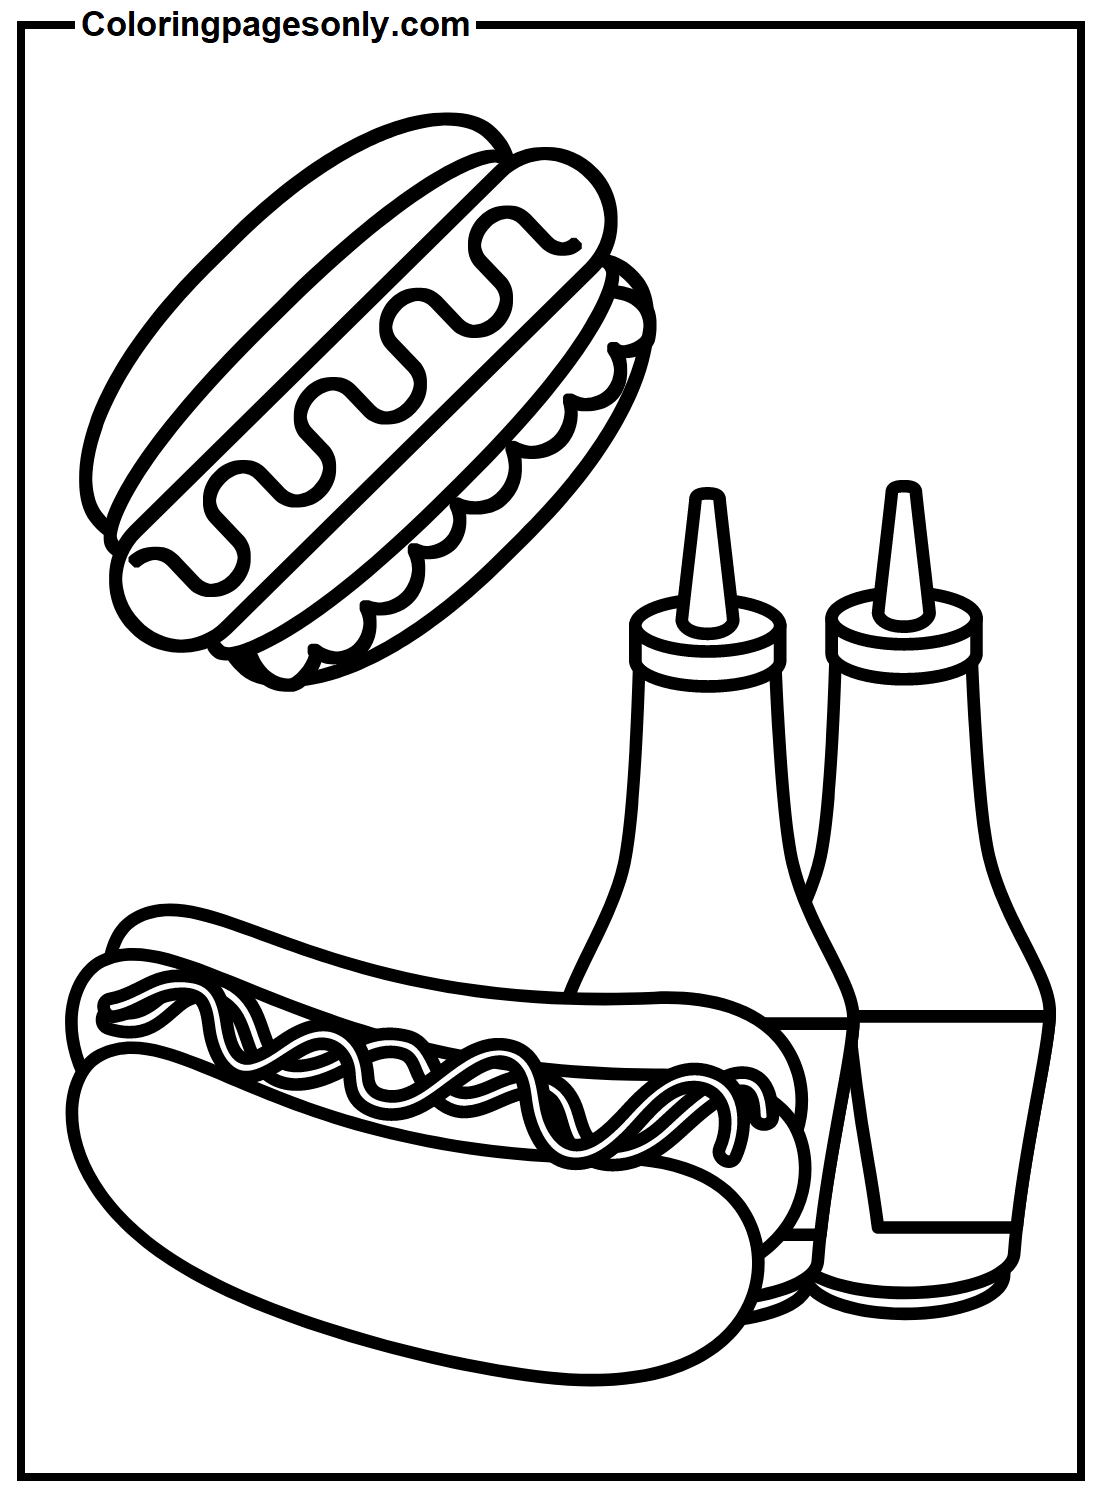 Cachorro-quente com garrafa de ketchup from Hot Dog